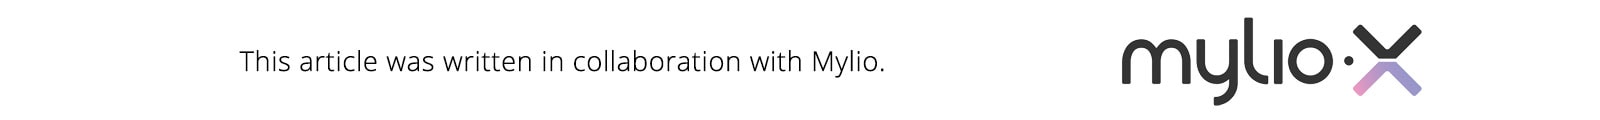 mylio review reddit